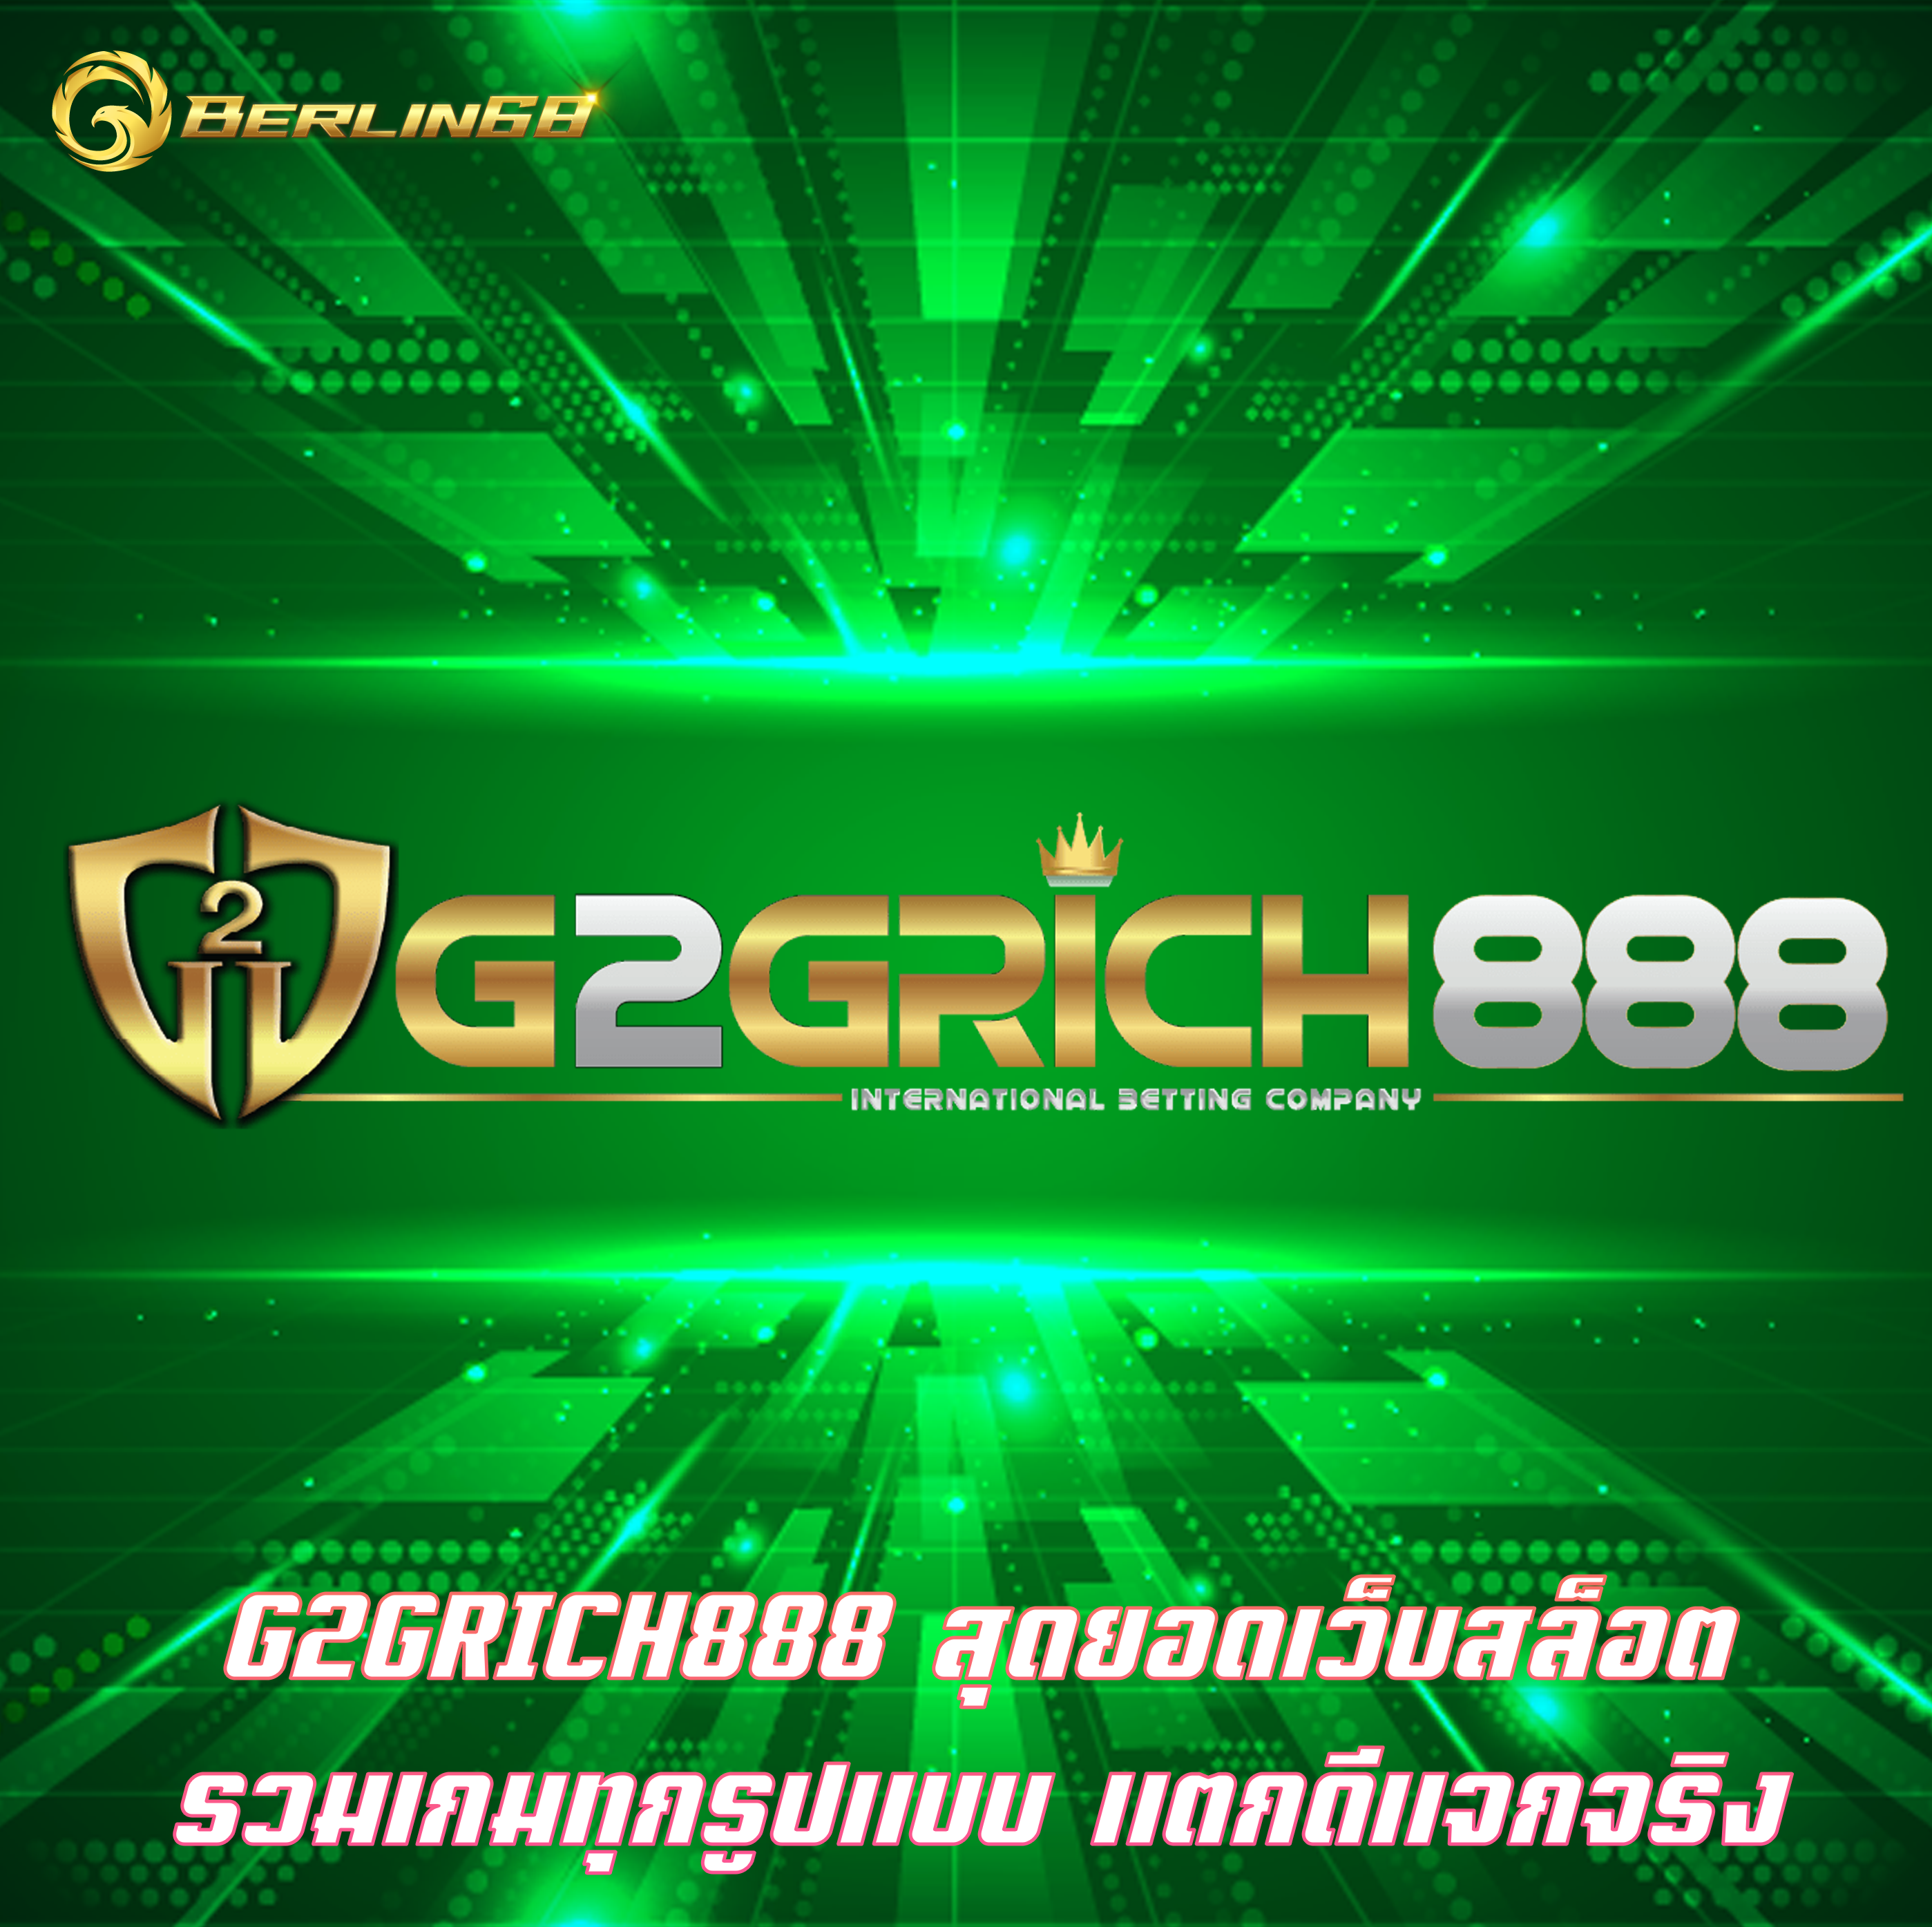 G2GRICH888 สุดยอดเว็บสล็อต รวมเกมทุกรูปแบบ แตกดีแจกจริง